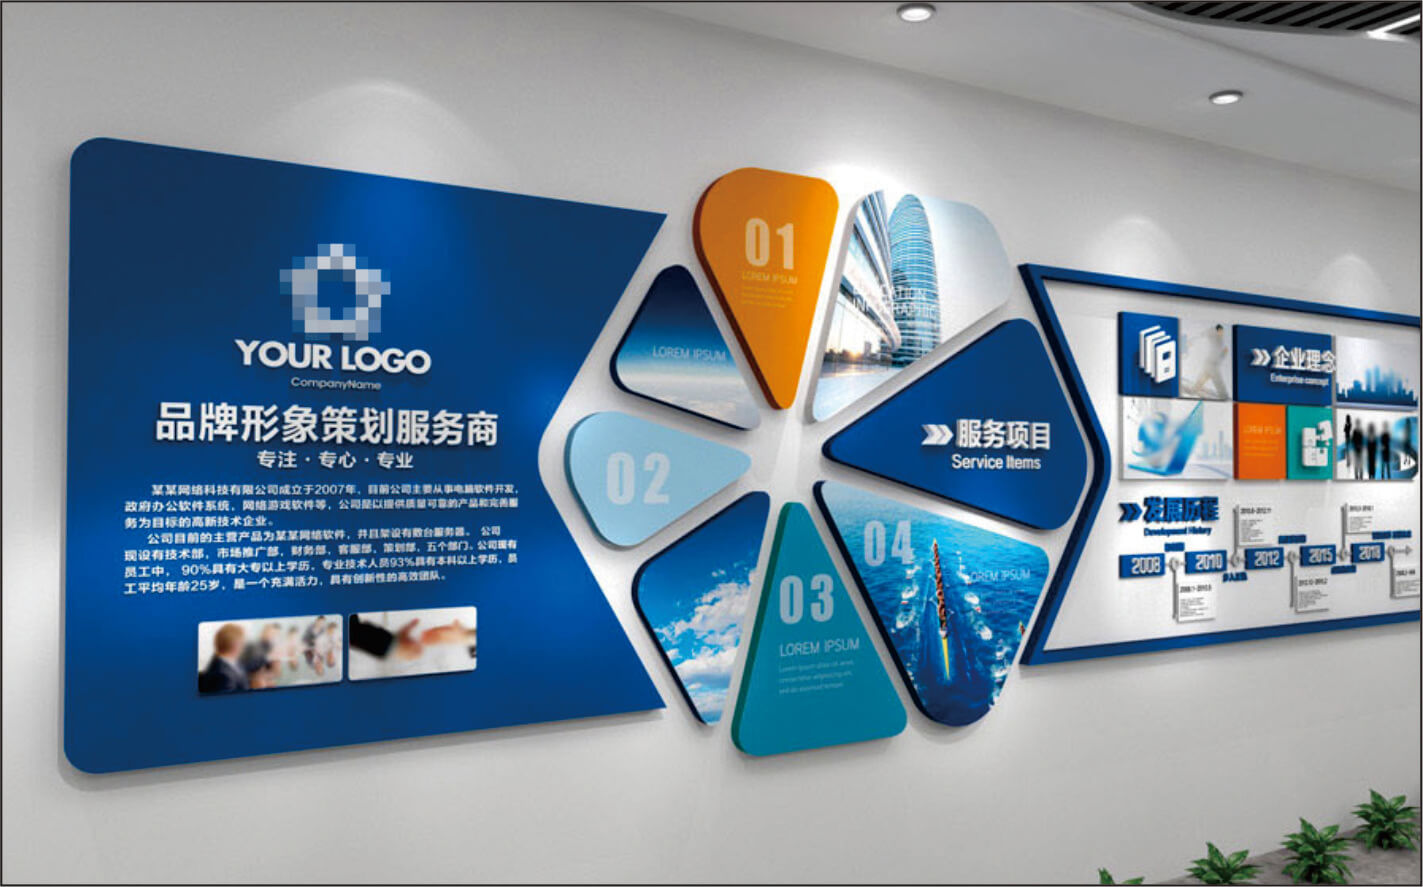 郑州厂家专业 灯箱、广告字、灯箱、广告字、广告牌制作 提供LED工艺 发光展示广告牌制作图片